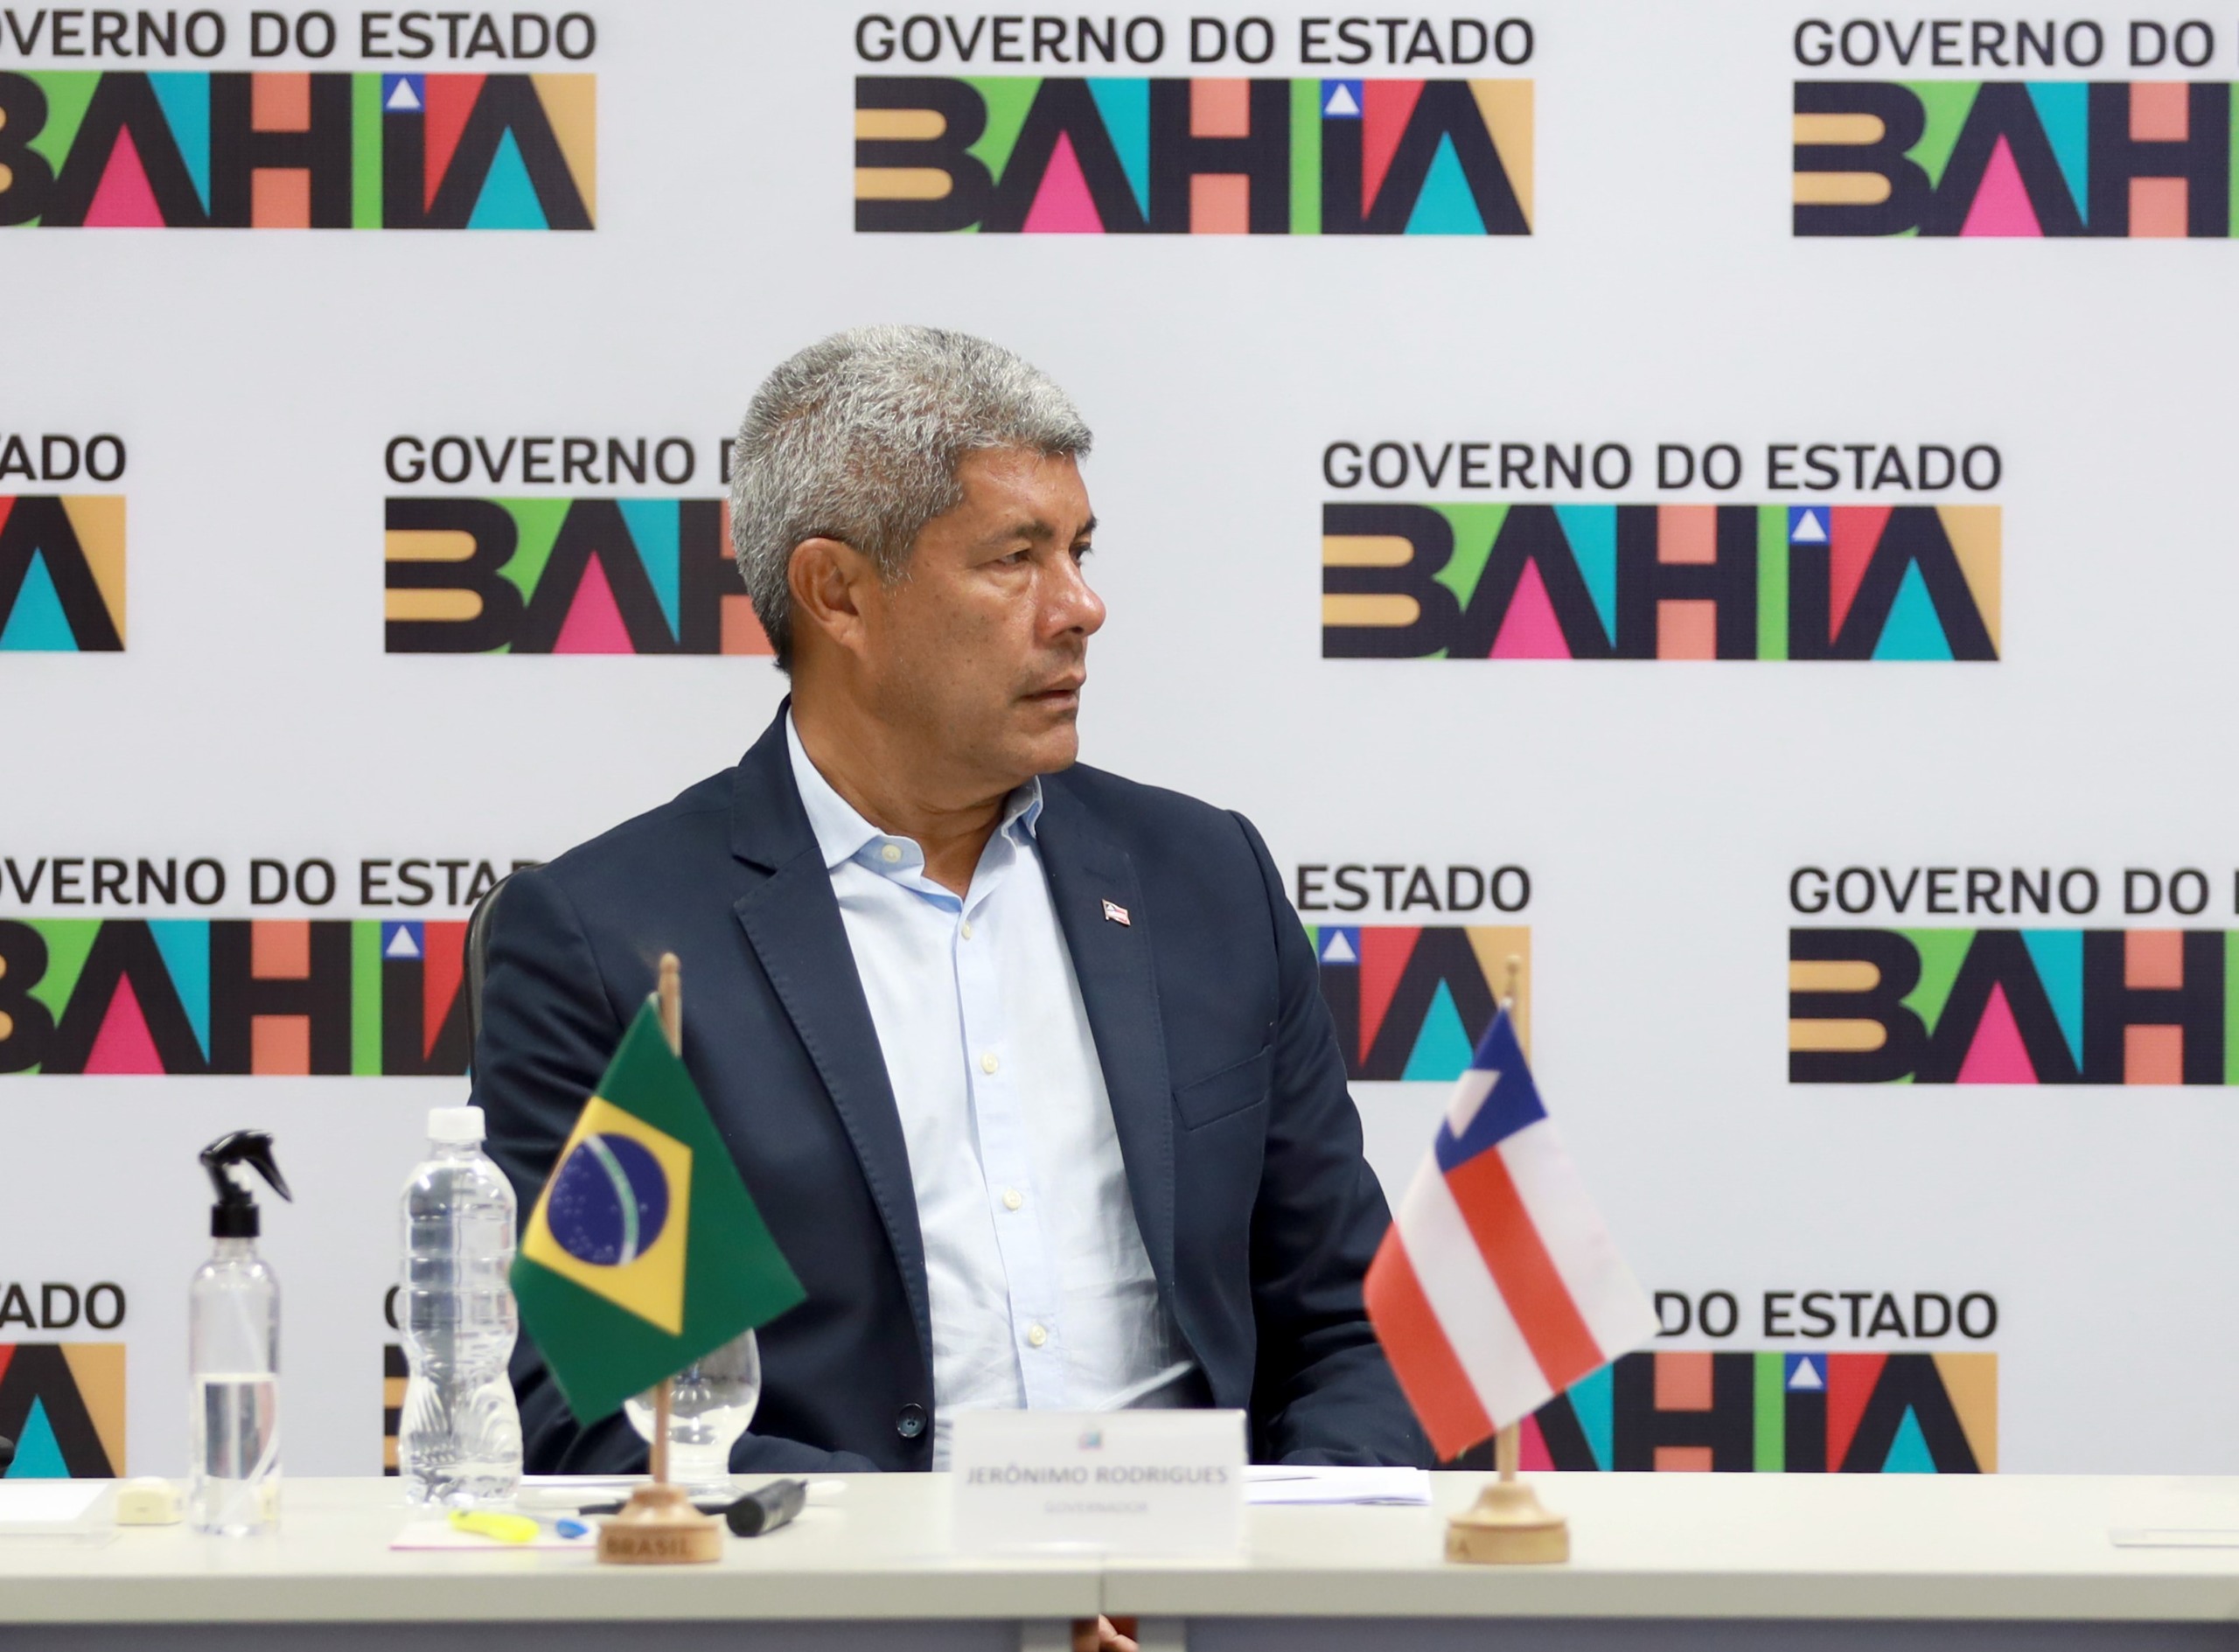 Governador da Bahia, Jerônimo Rodrigues sanciona lei que aumenta alíquota de ICMS no estado